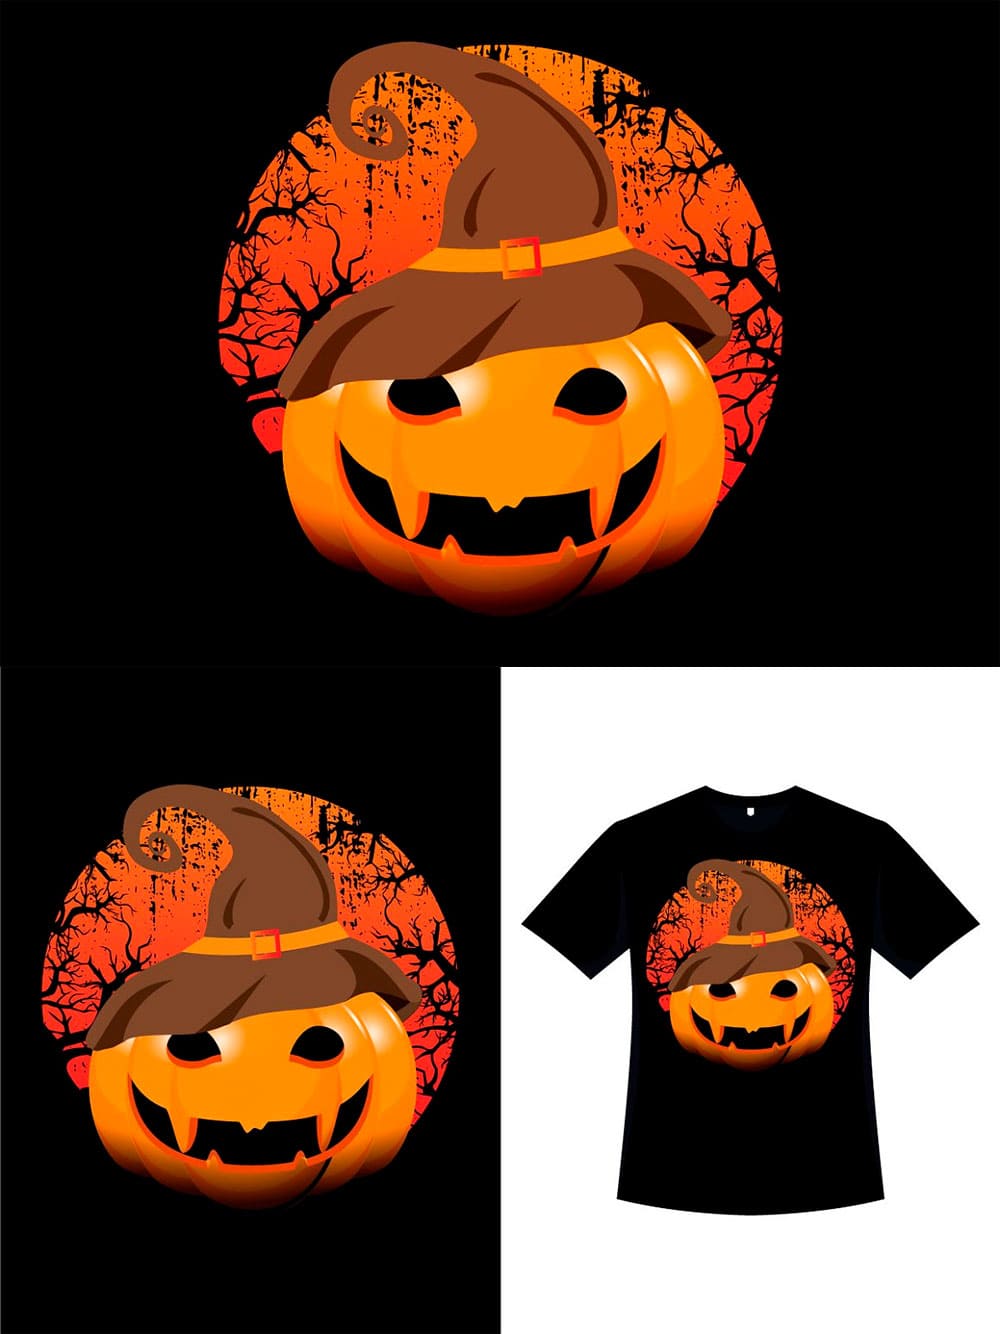 Halloween pumpkin scary t-shirt art, picture for pinterest.